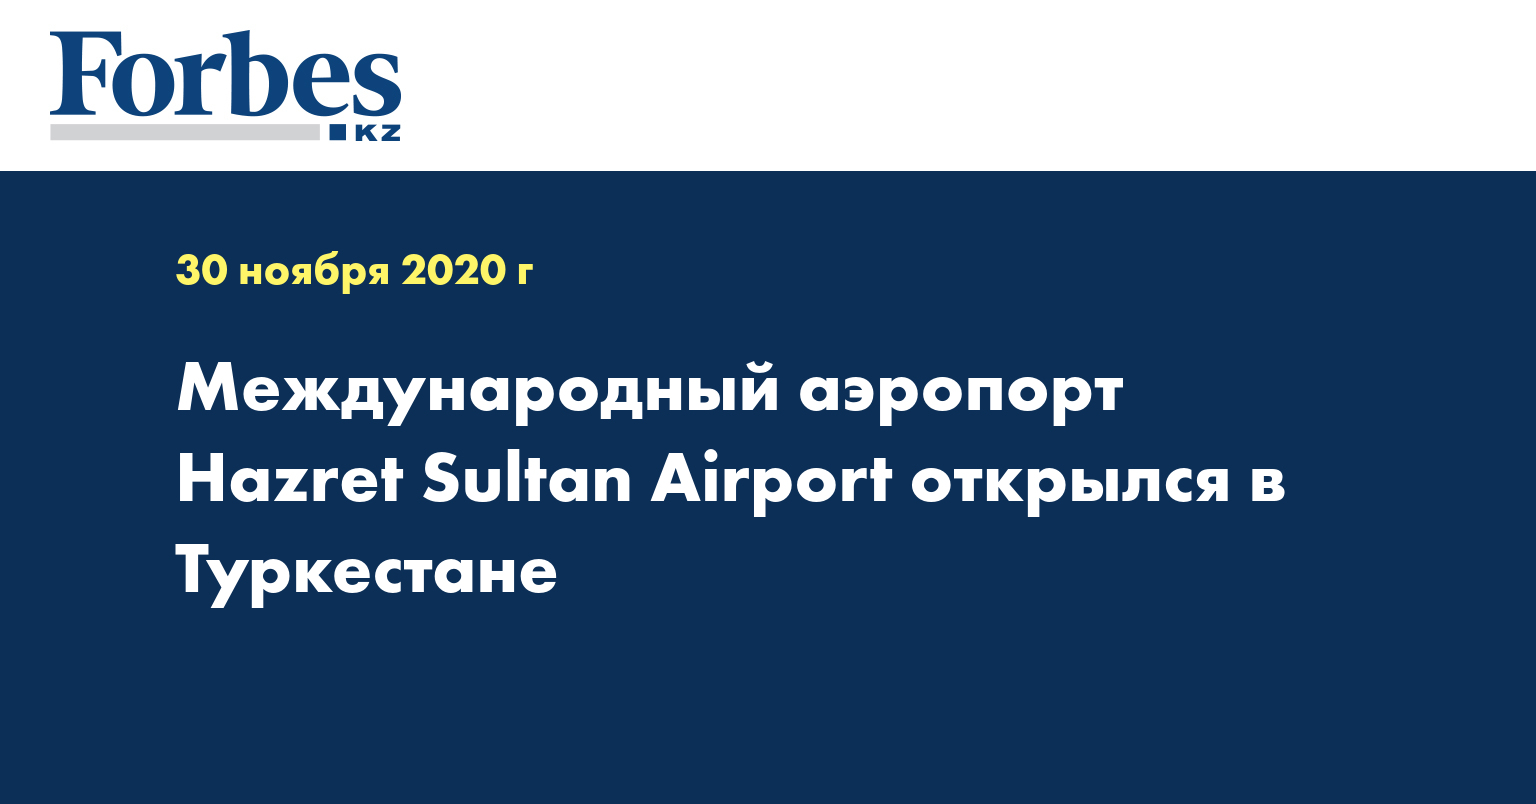 Международный аэропорт Hazret Sultan Airport открылся в Туркестане